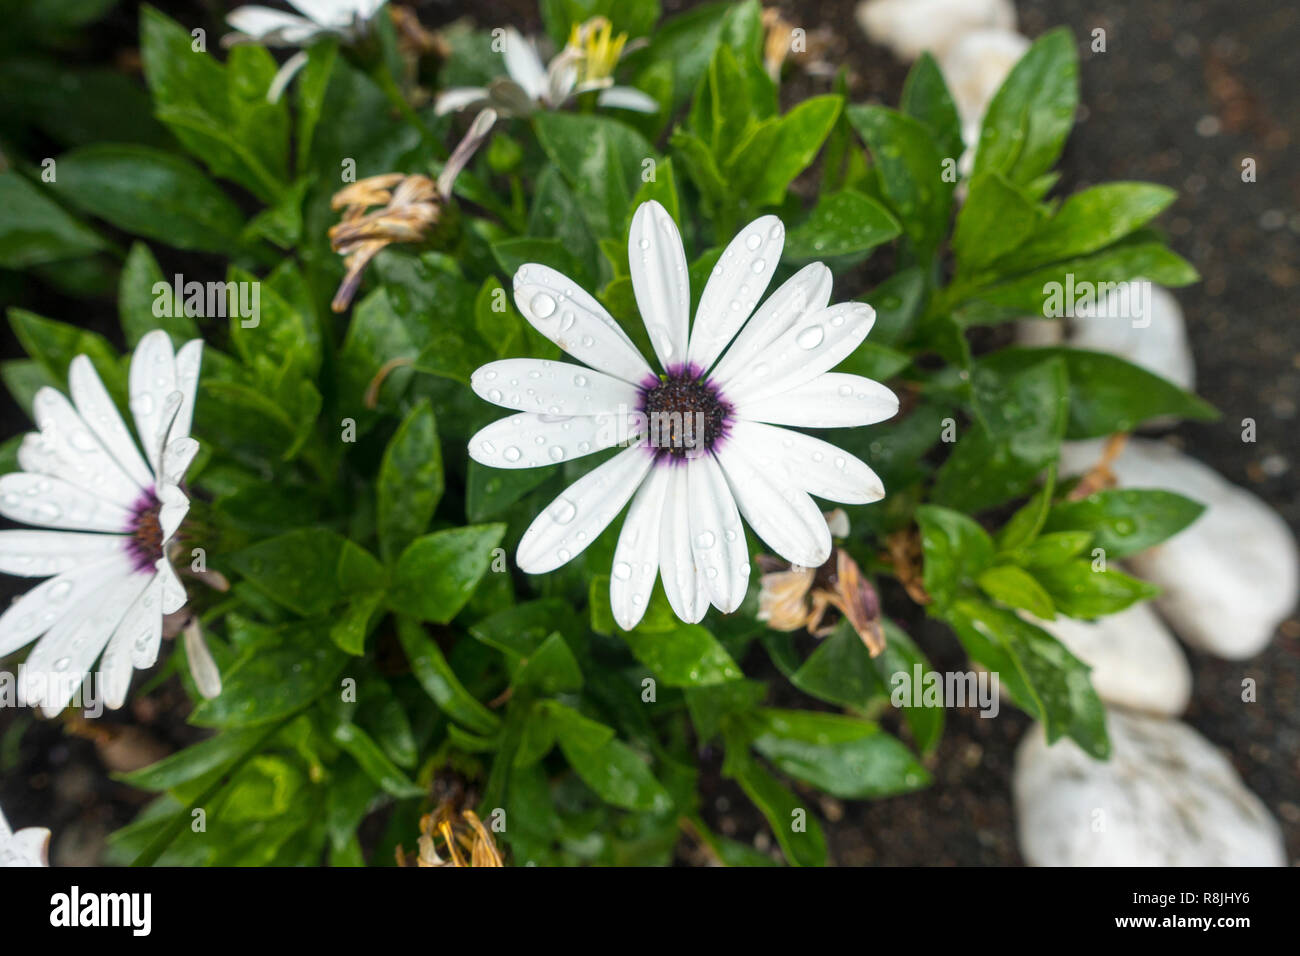 Osteospermum, oder Kapkörbchen weißen Blütenblättern glatt und flach mit lila Center Stockfoto